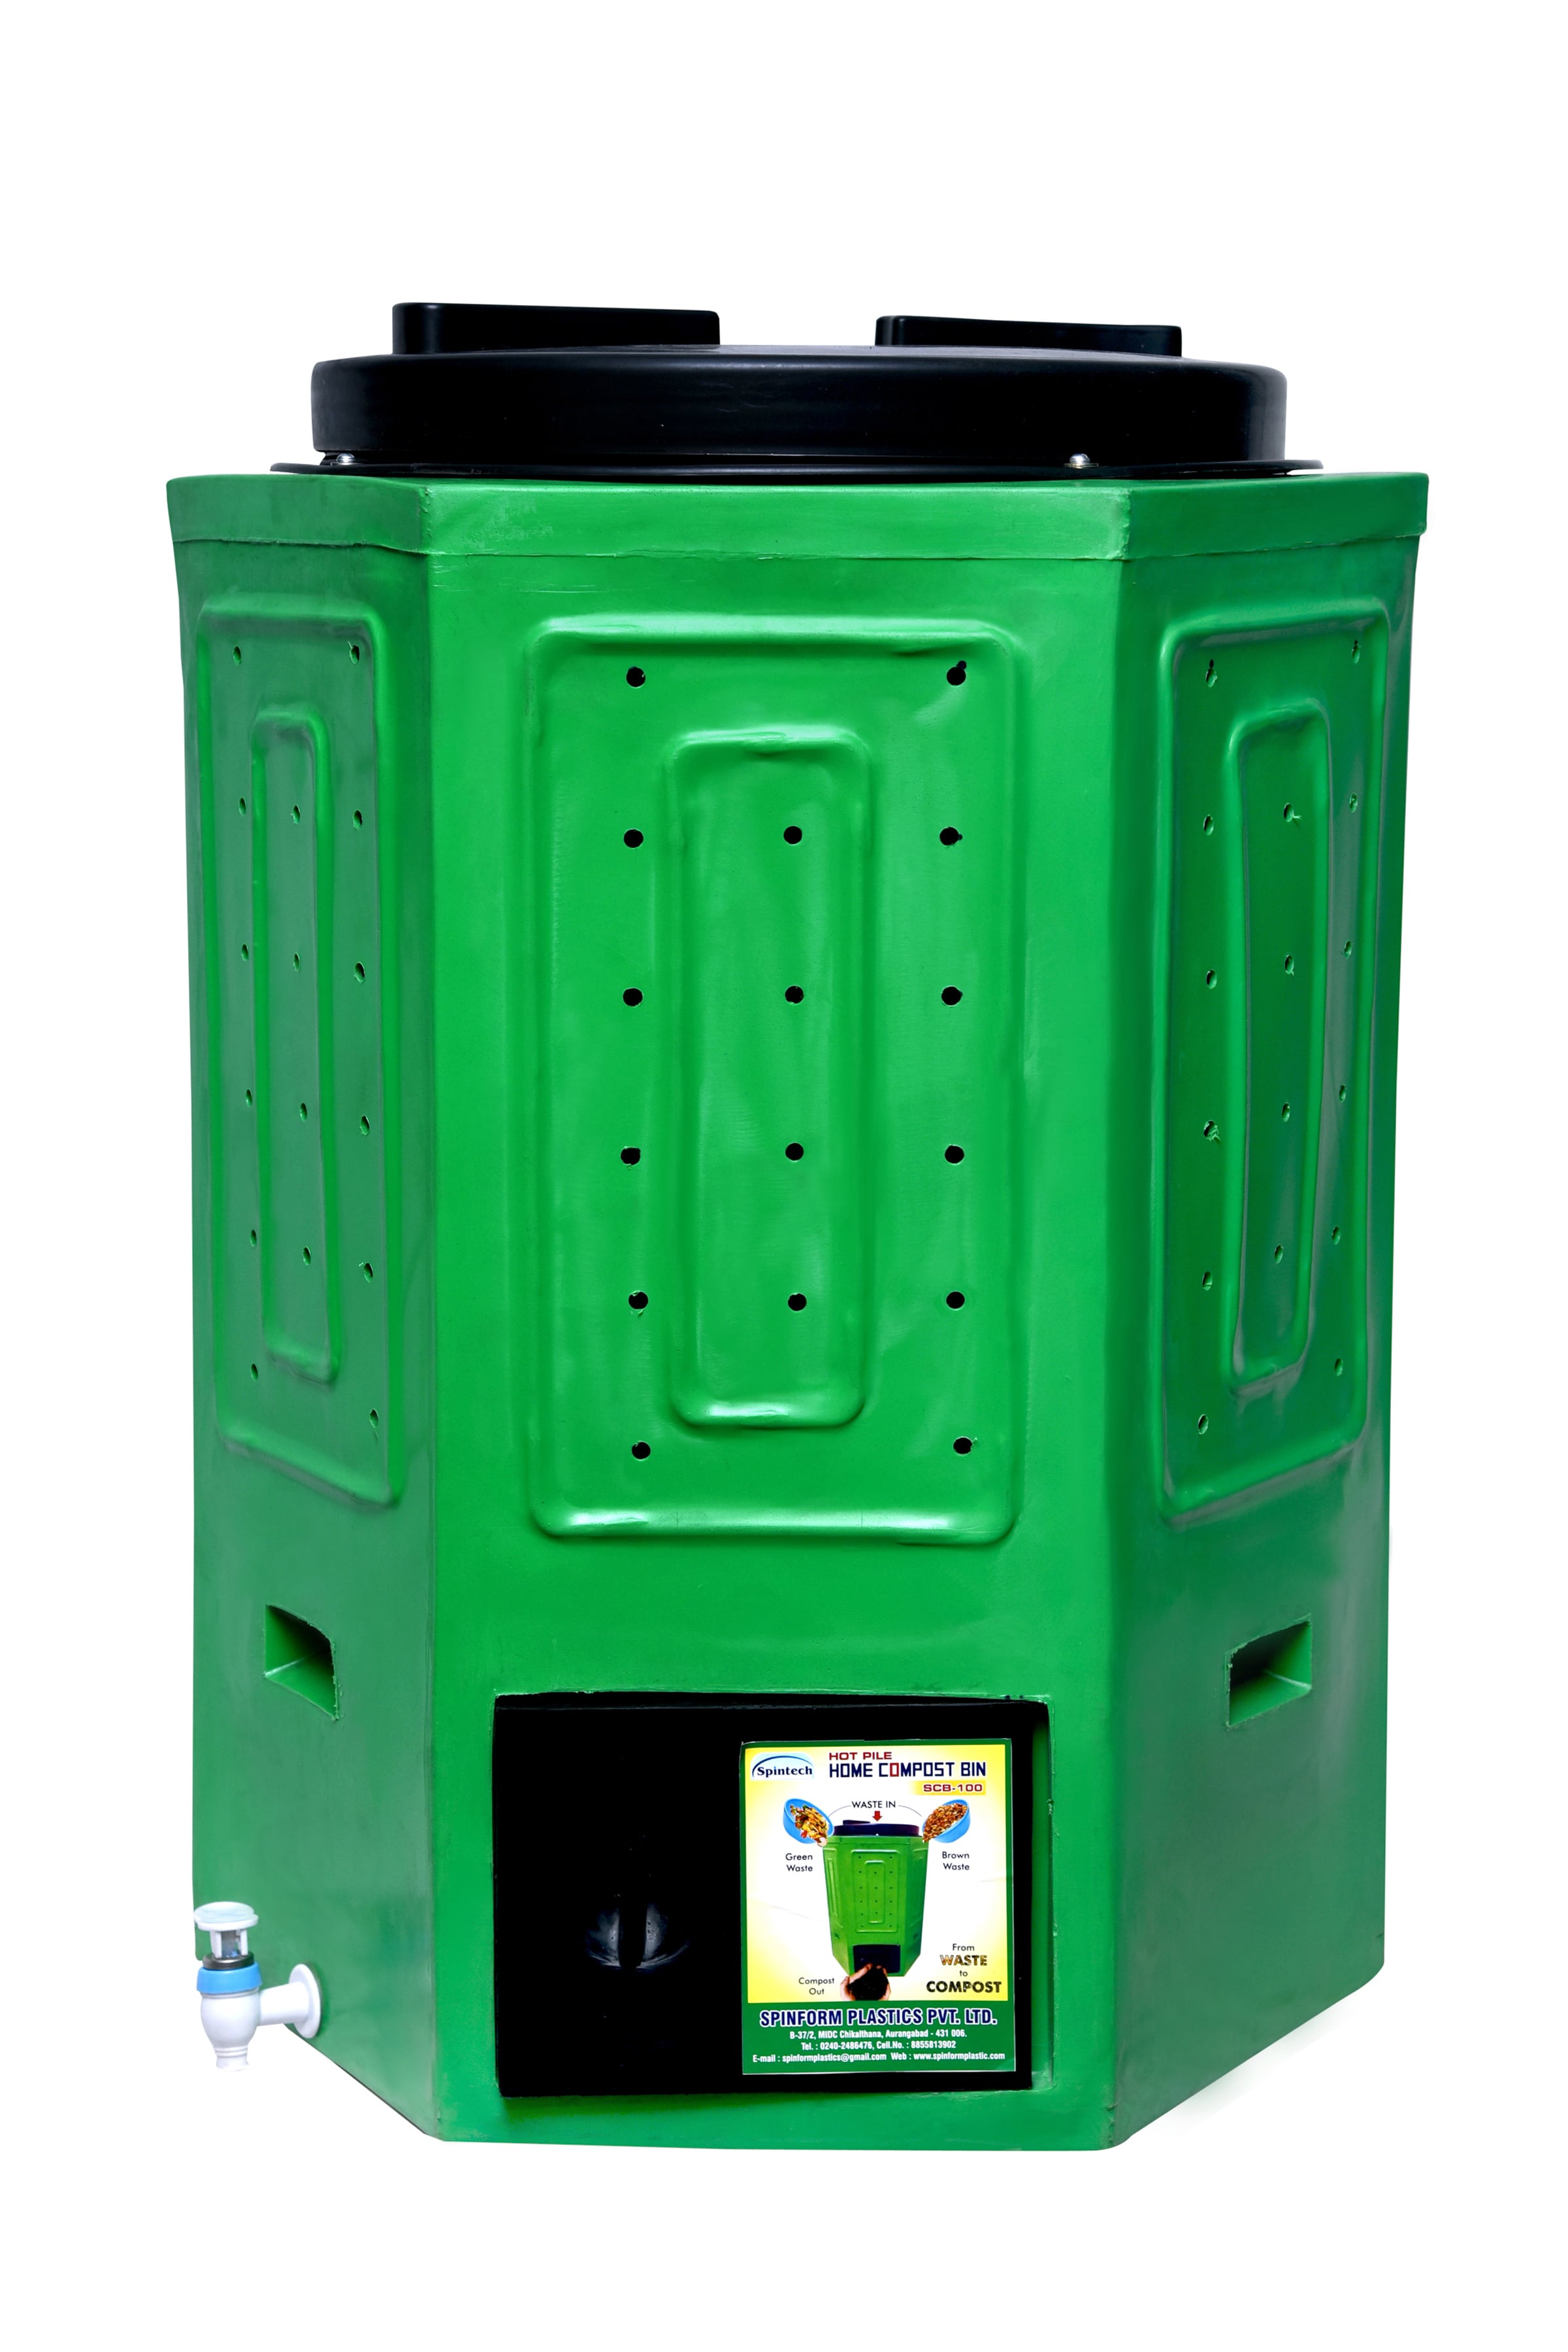 home-compost-bin-scb-100